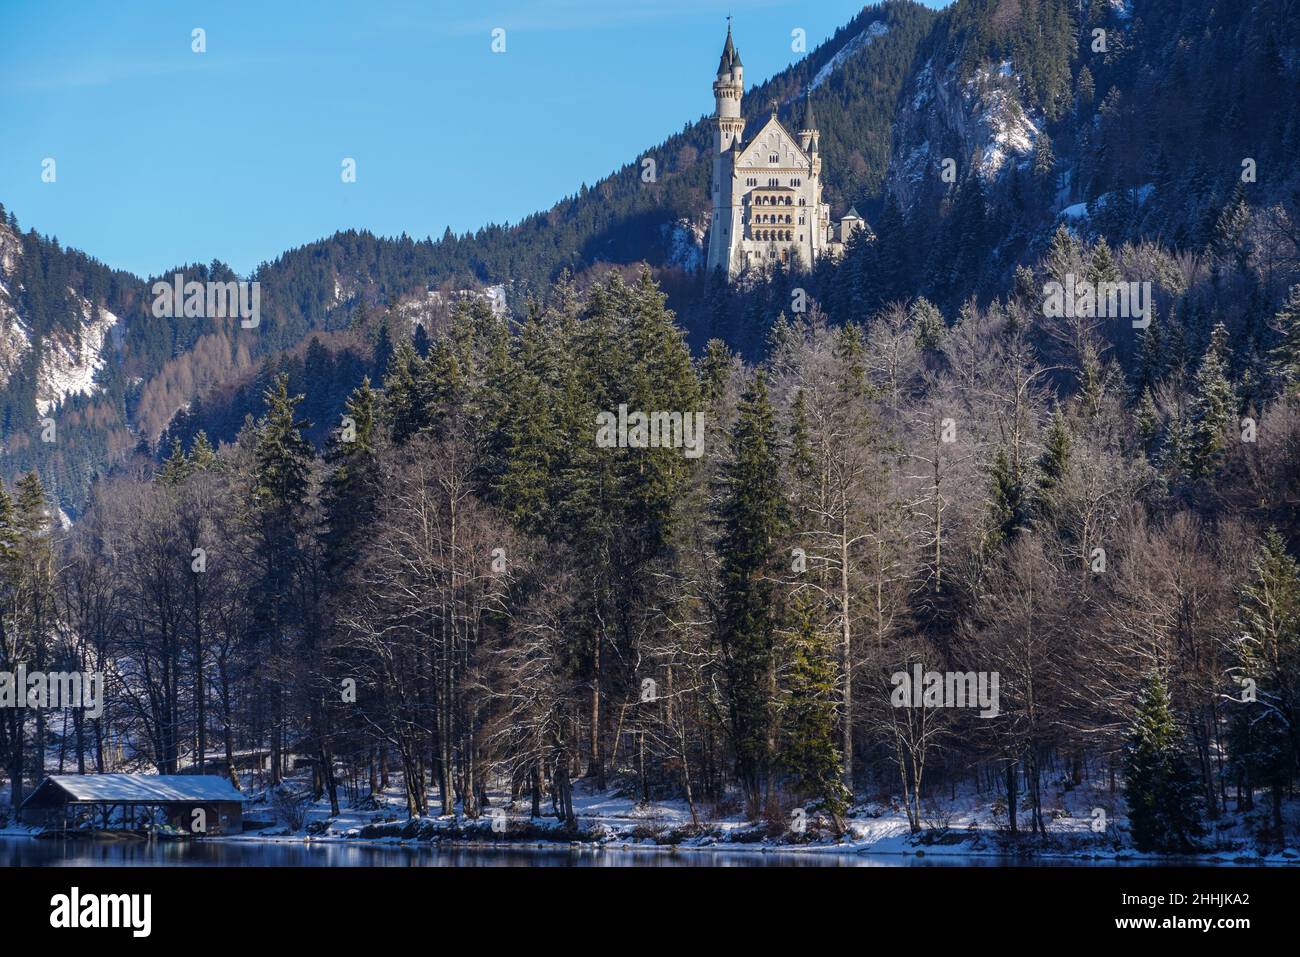 Blick im Winter vom teilweise eisbedeckten Alpsee auf das königliche Schloss Neuschwanstein von König Ludwig II. Stockfoto